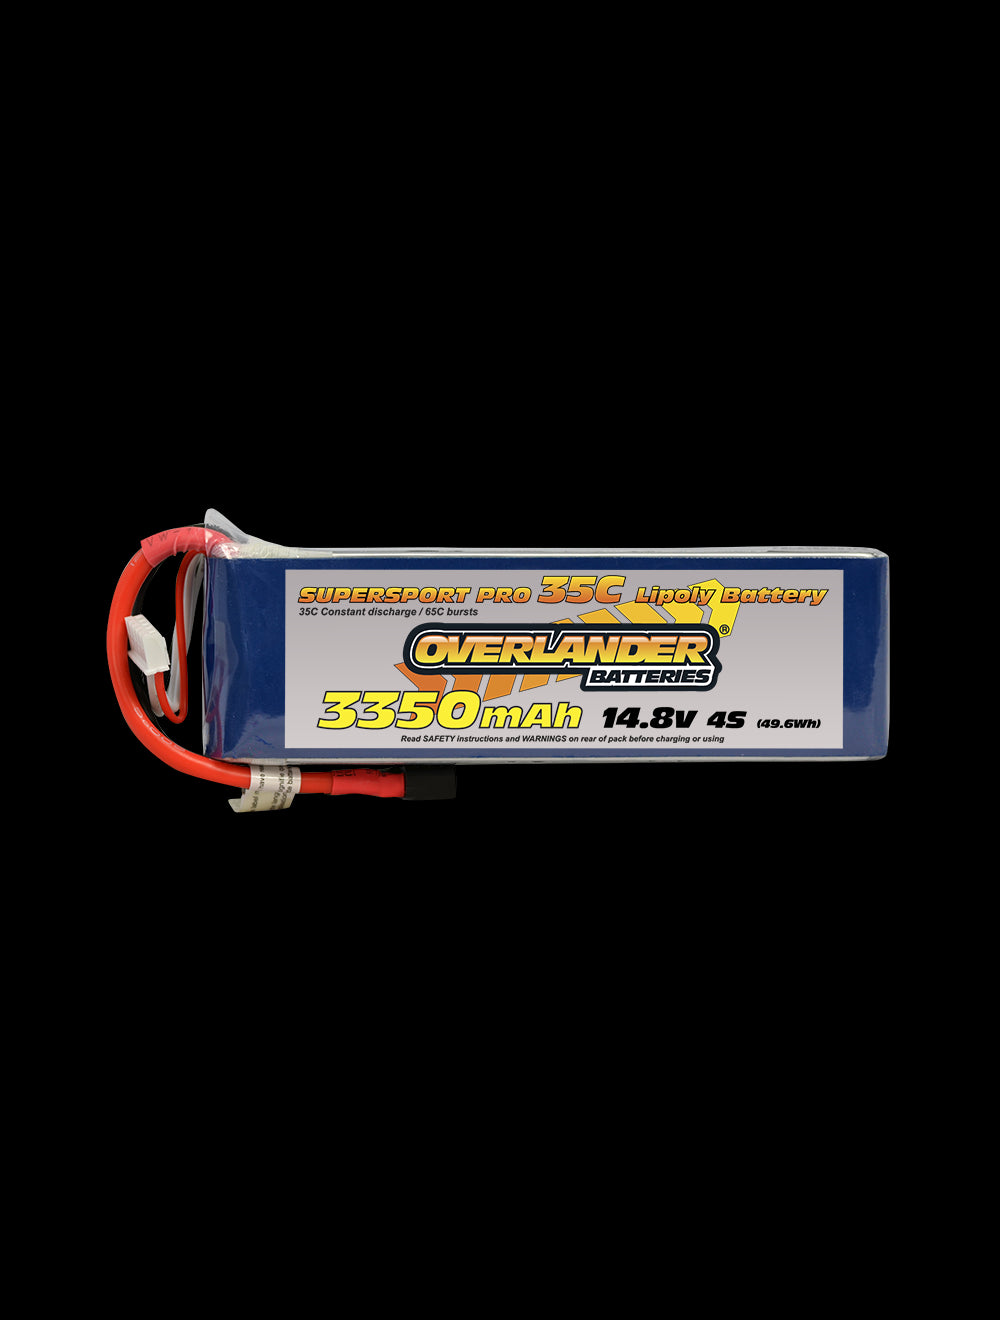 Overlander 3350mAh 14.8V 4S 35C Supersport Pro LiPo Battery - Deans Connector 2571